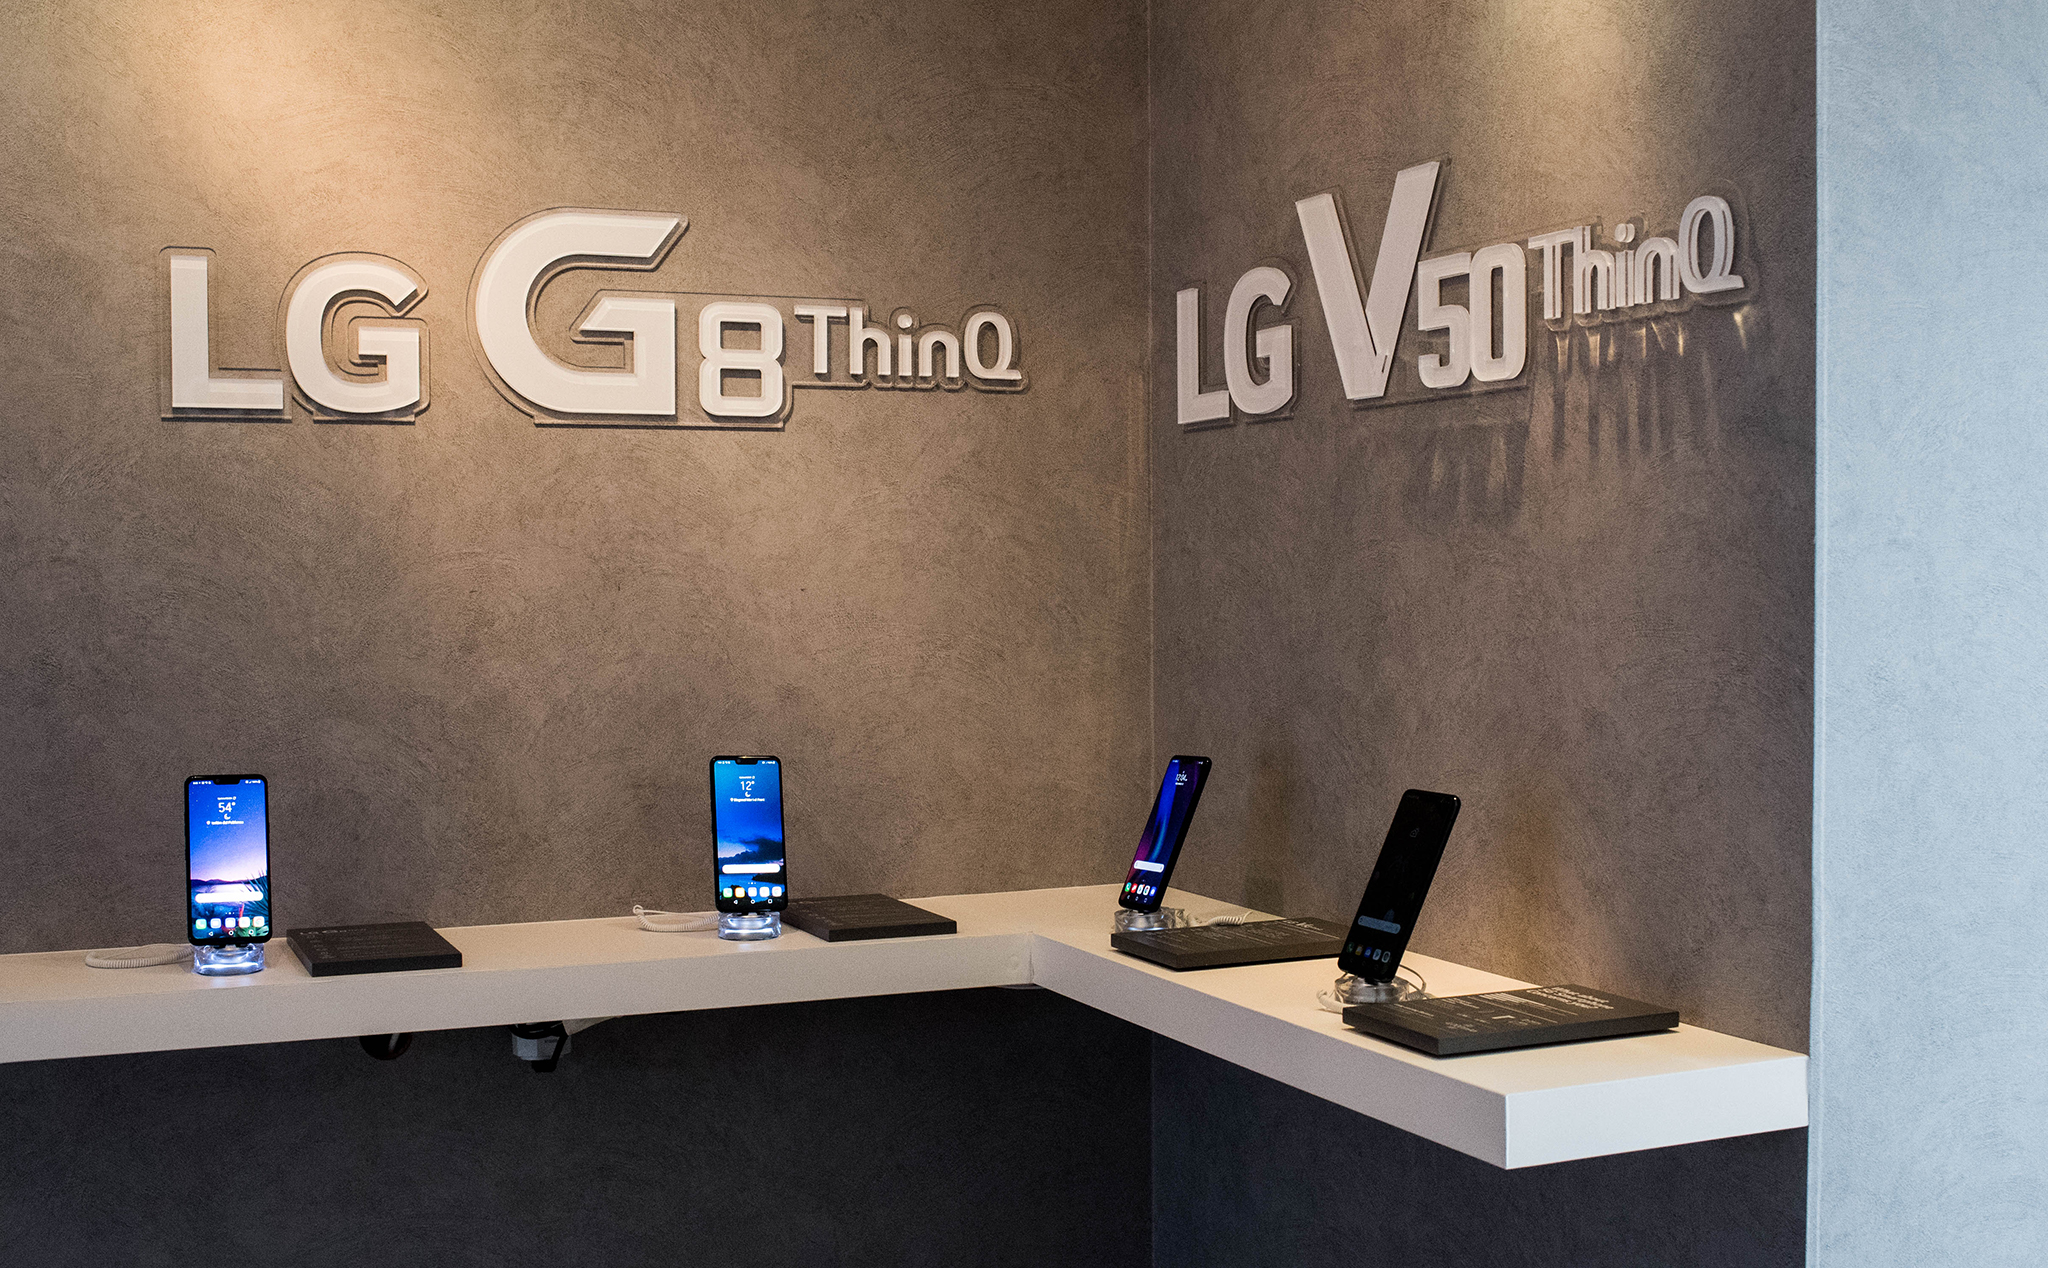 Giám đốc ngành hàng LG Việt Nam xác nhận LG sẽ lại bán smartphone ở Việt Nam